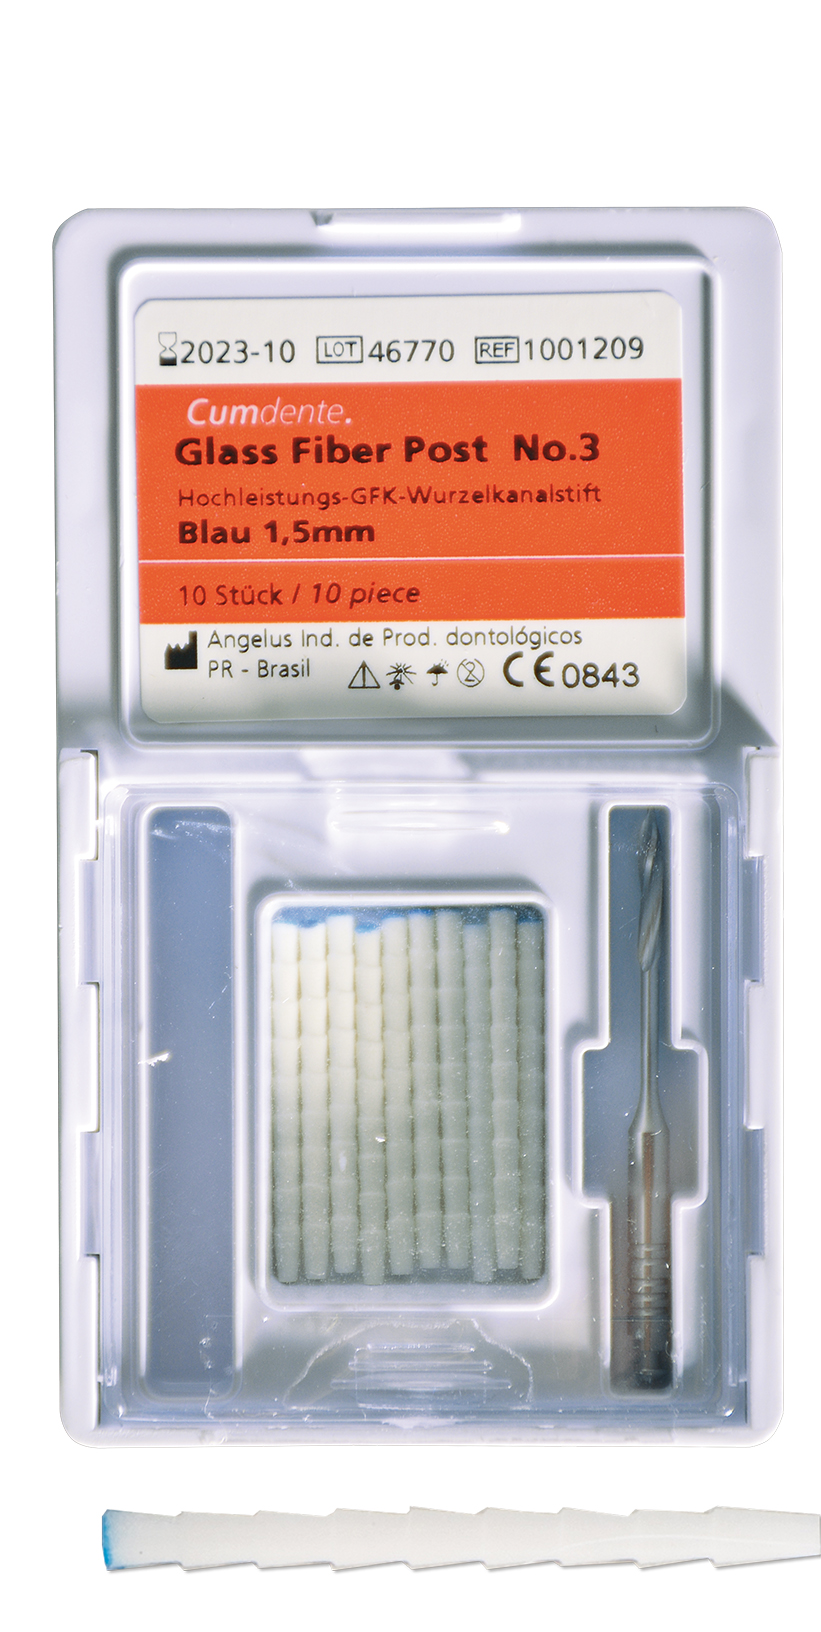 Glass fibre post